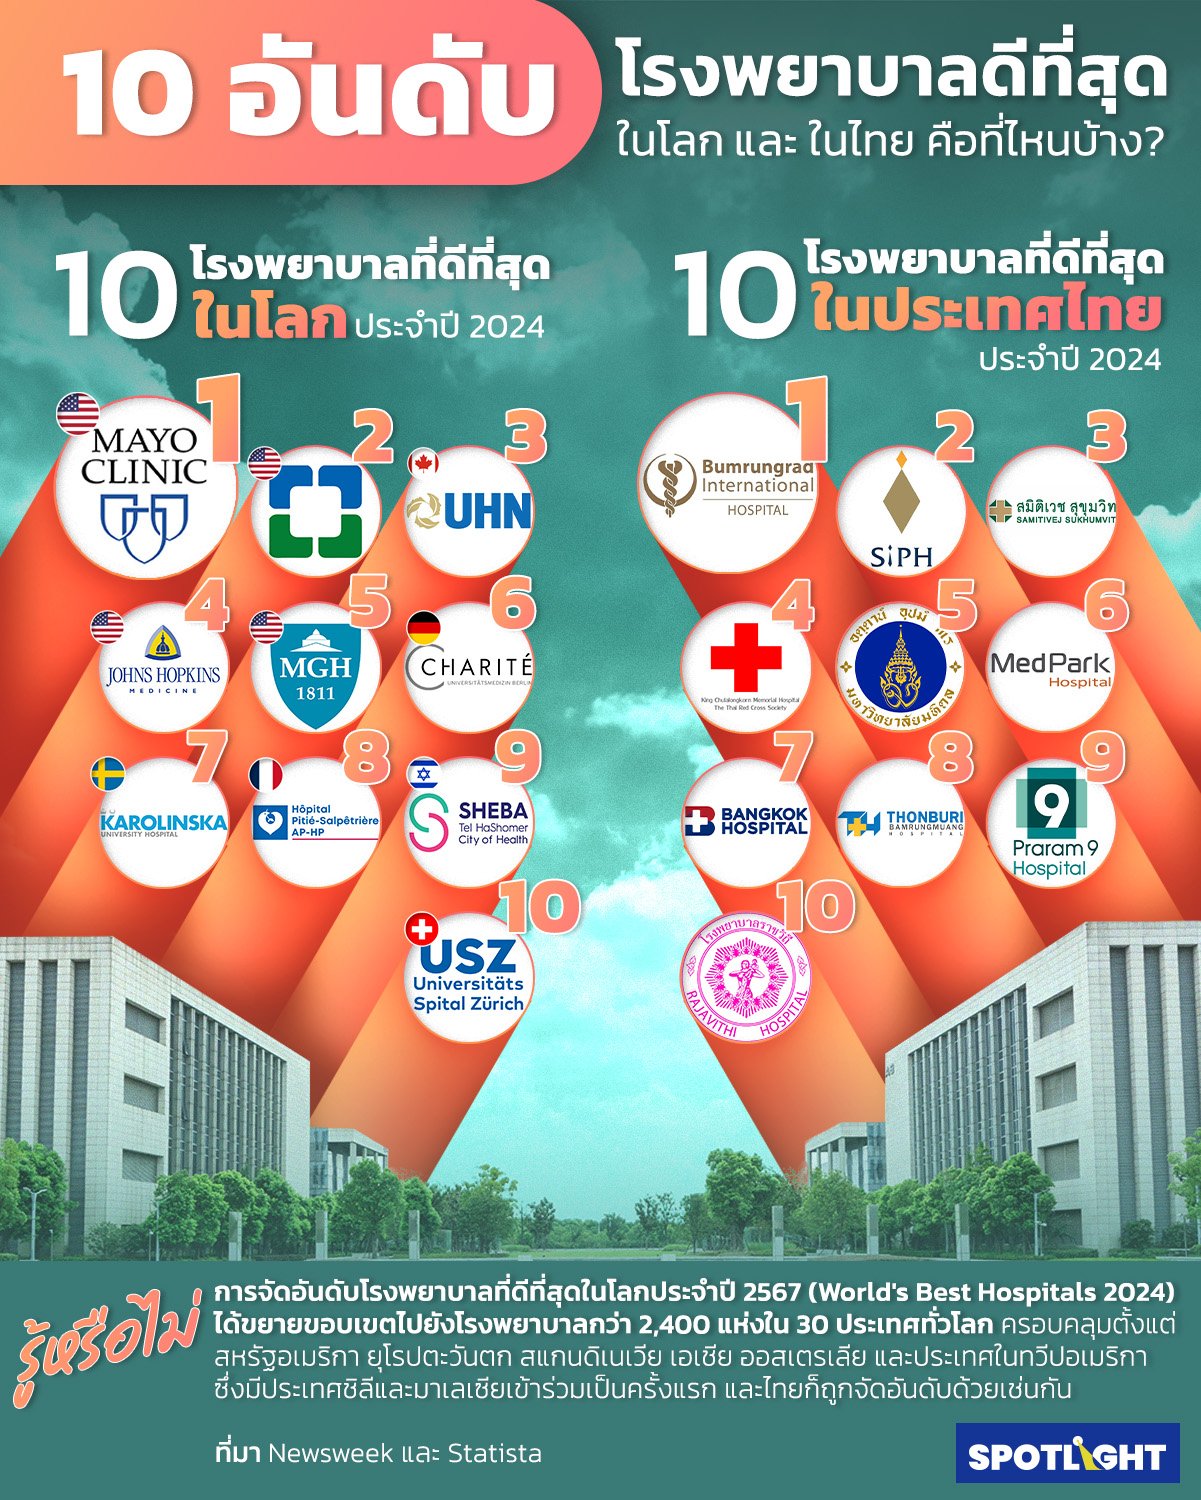 โรงพยาบาลที่ดีที่สุดในประเทศไทย 30 อันดับ ประจำปี 2024